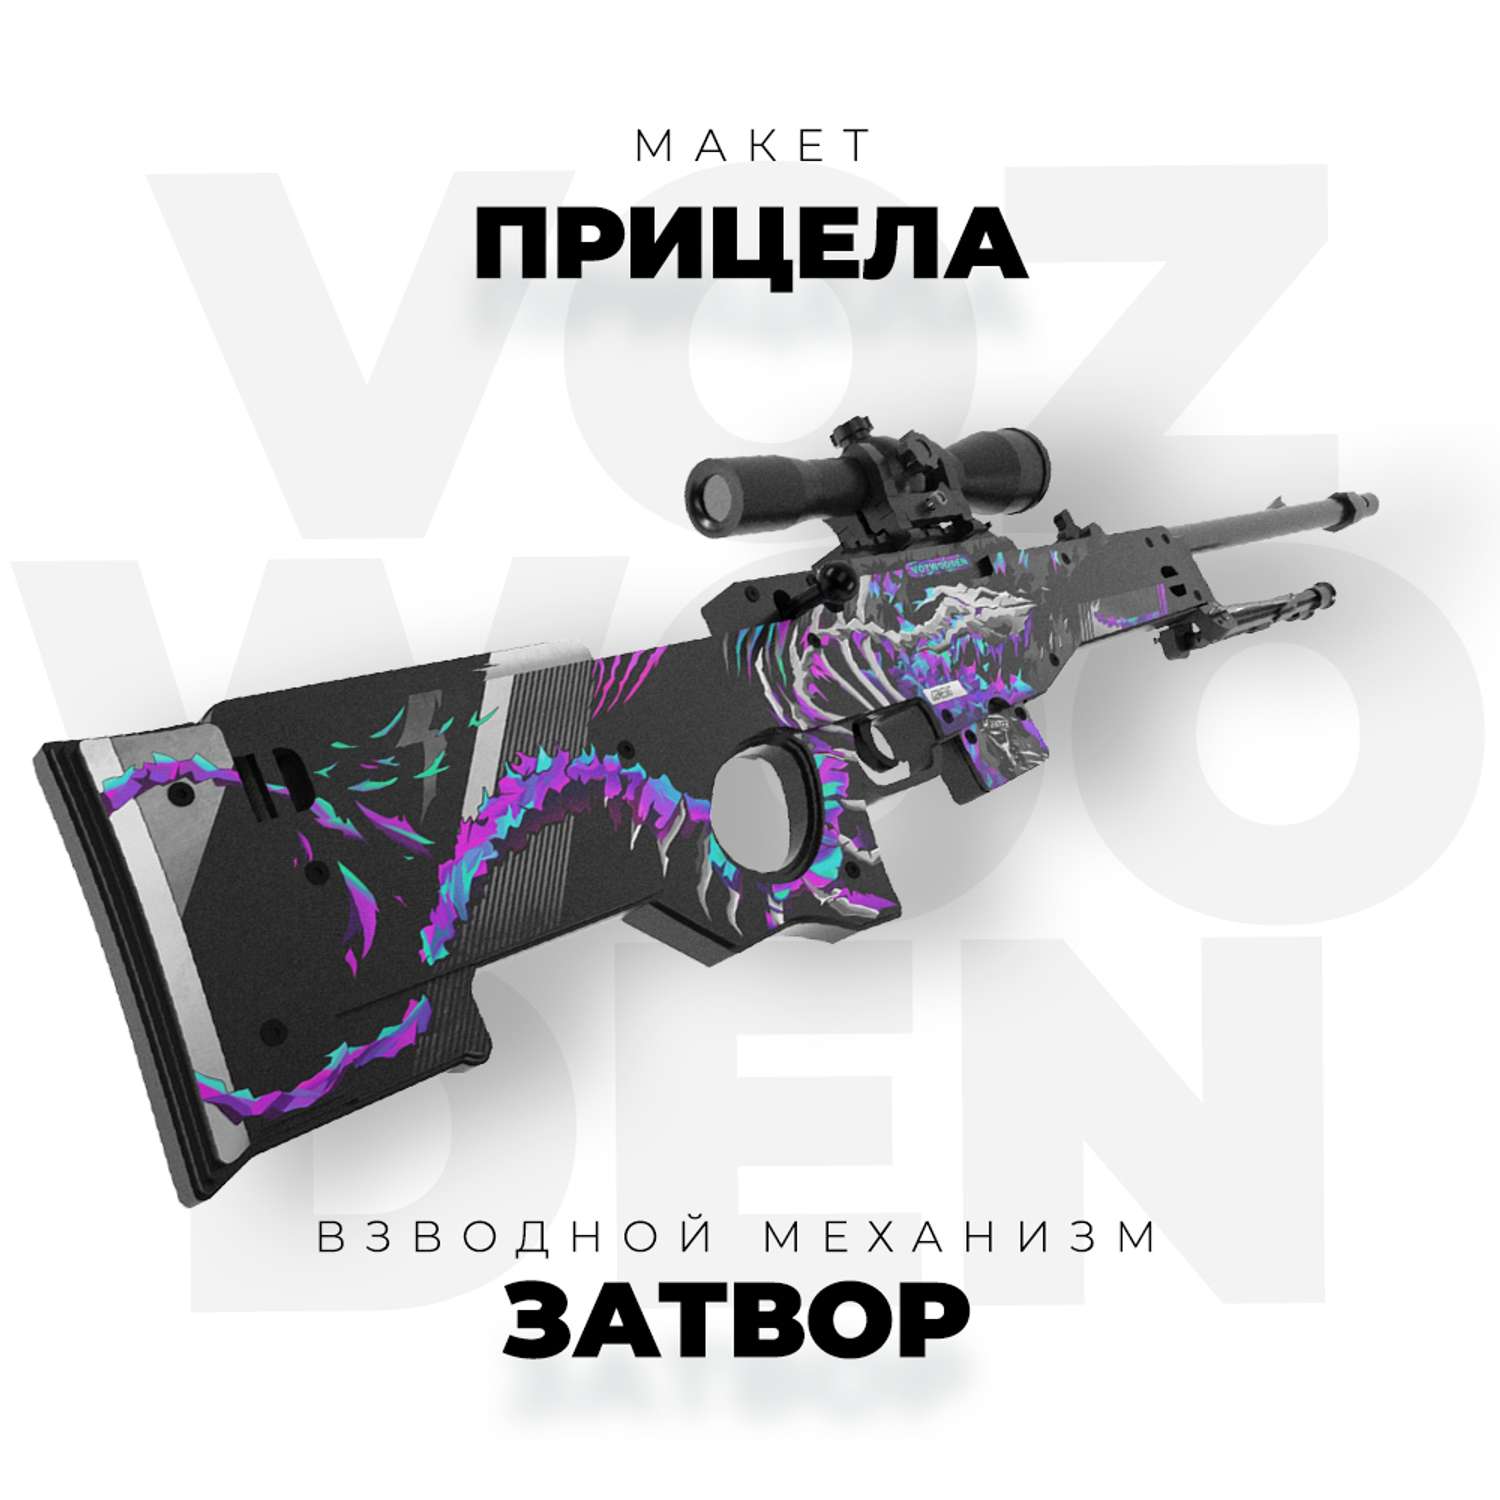 Снайперская винтовка VozWooden AWM Генезис Стандофф 2 деревянный резинкострел - фото 5